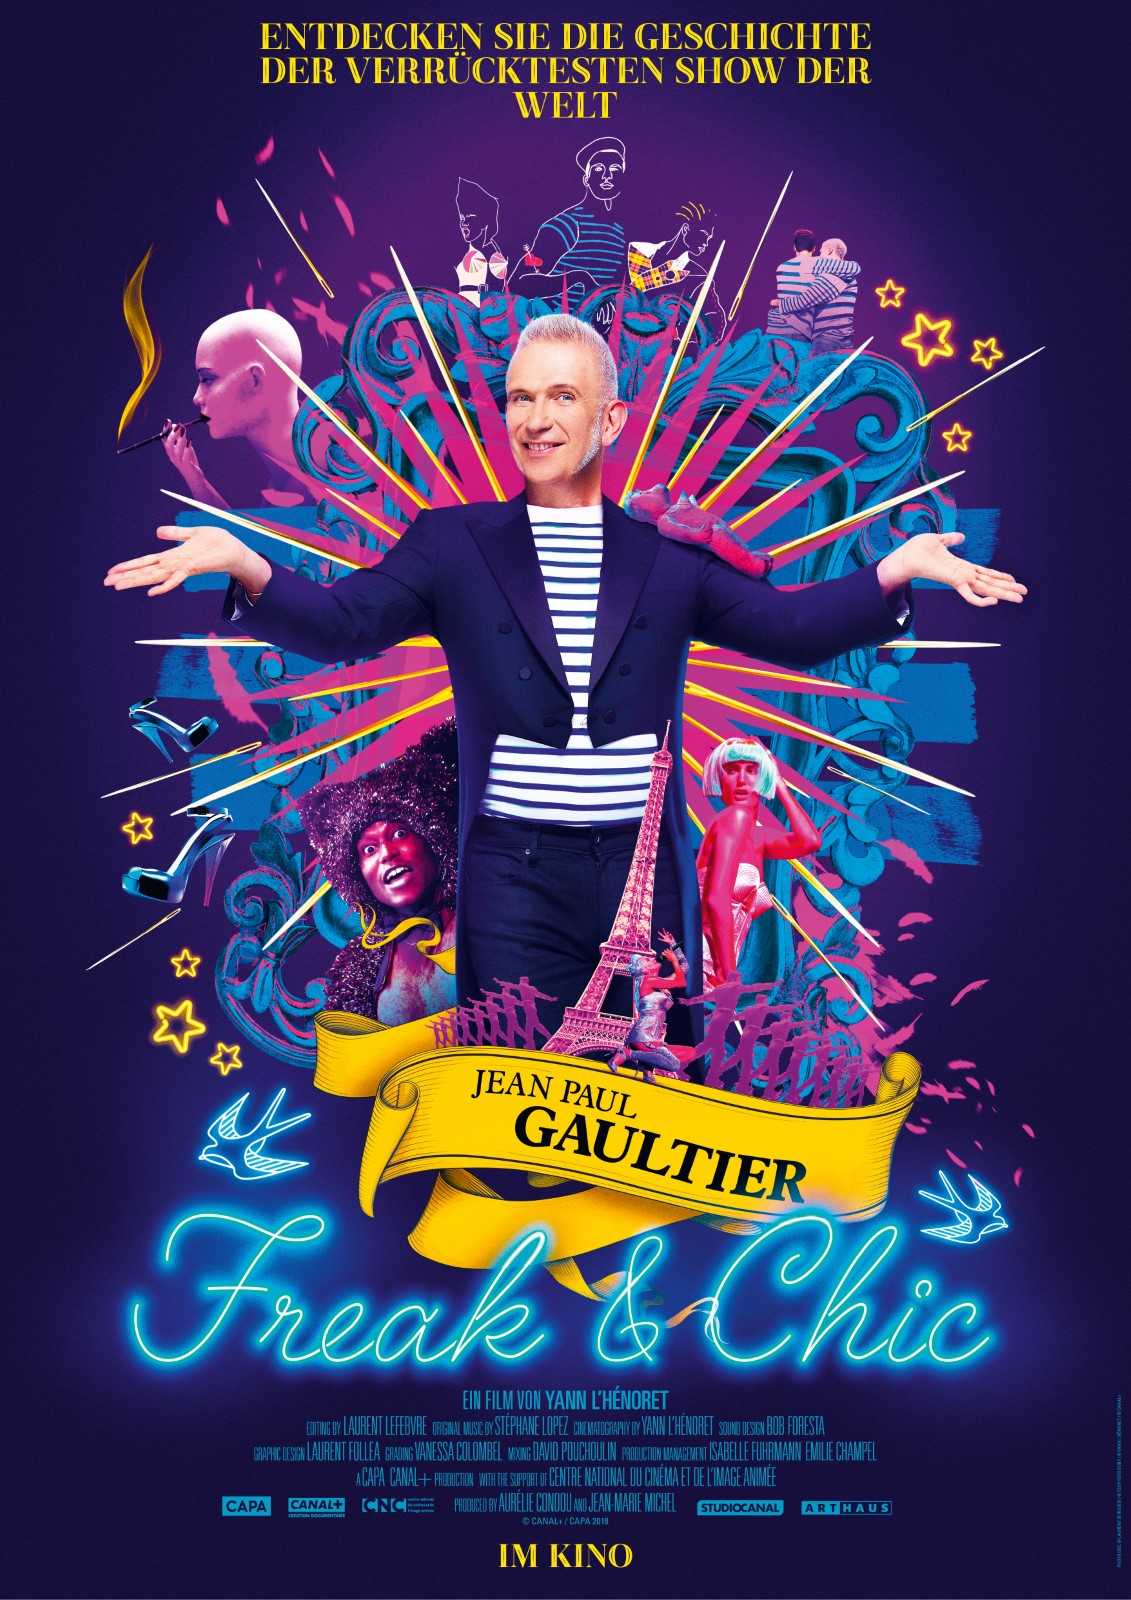 Jean Paul Gaultier Freak & Chic Film 2019 FILMSTARTS.de